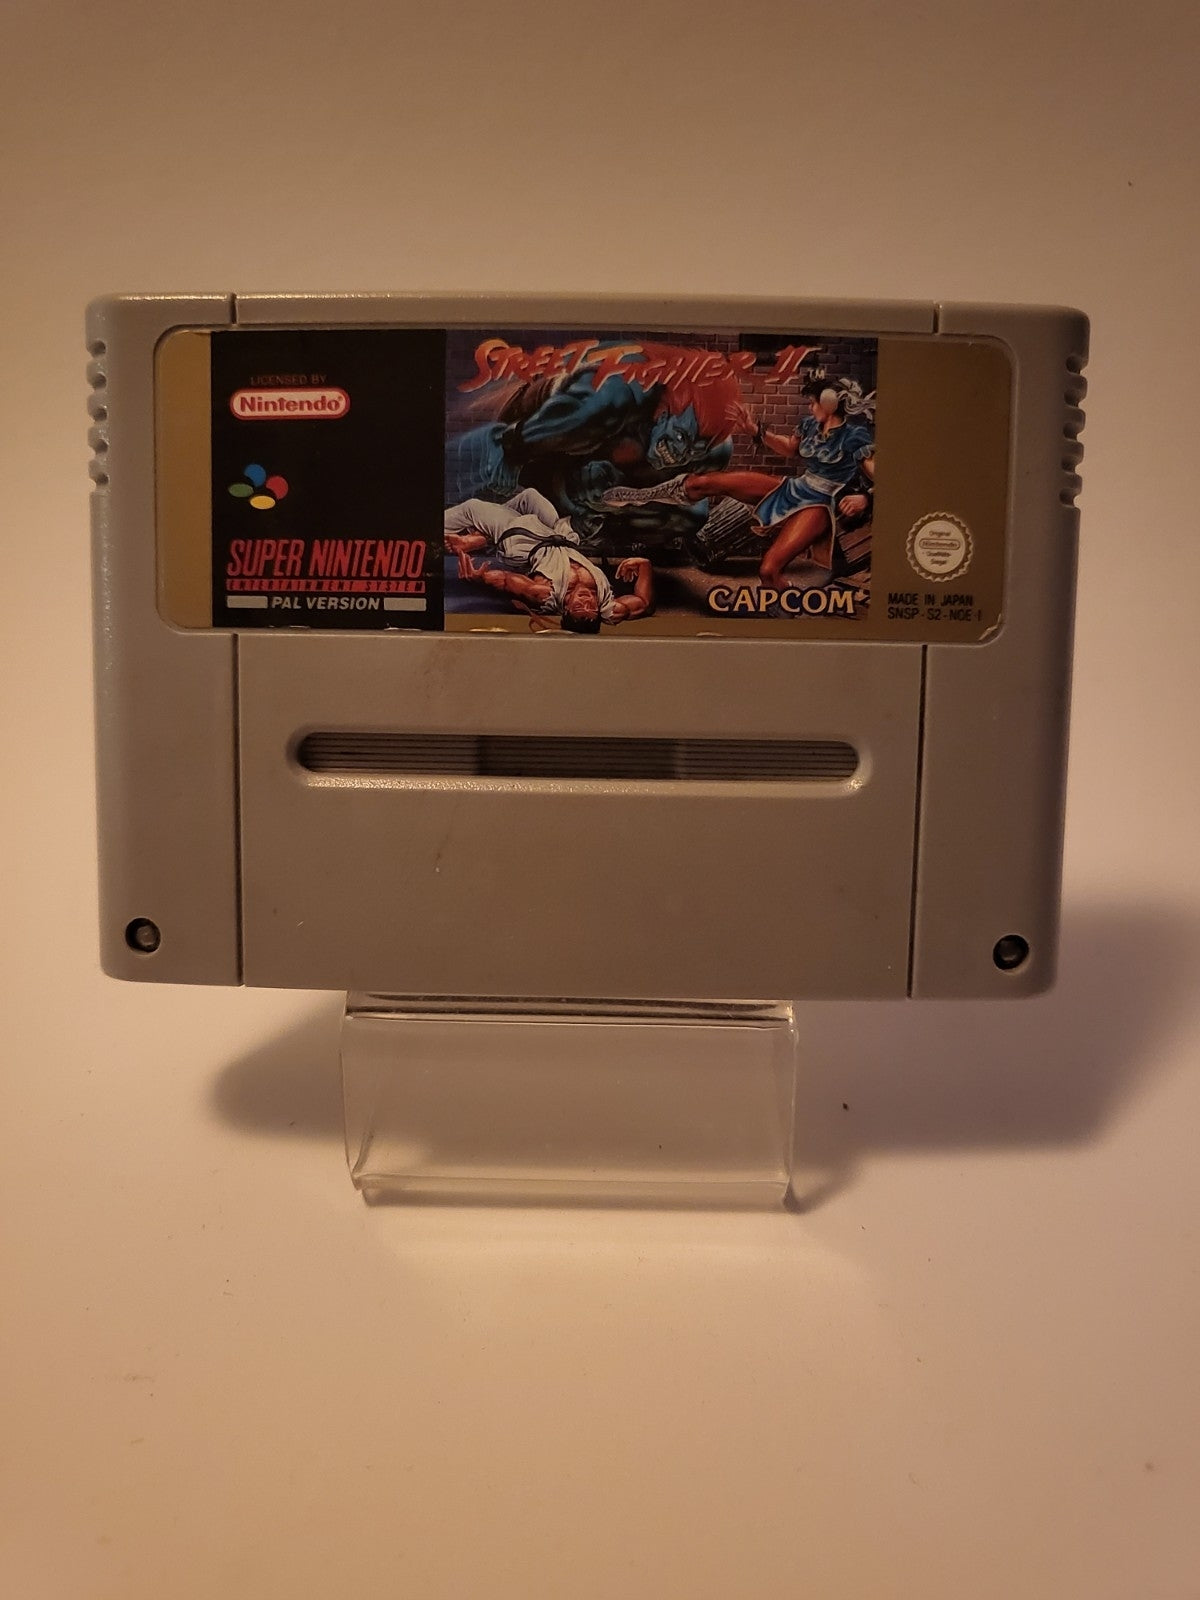 Street Fighter II Super Nintendo (SNES)